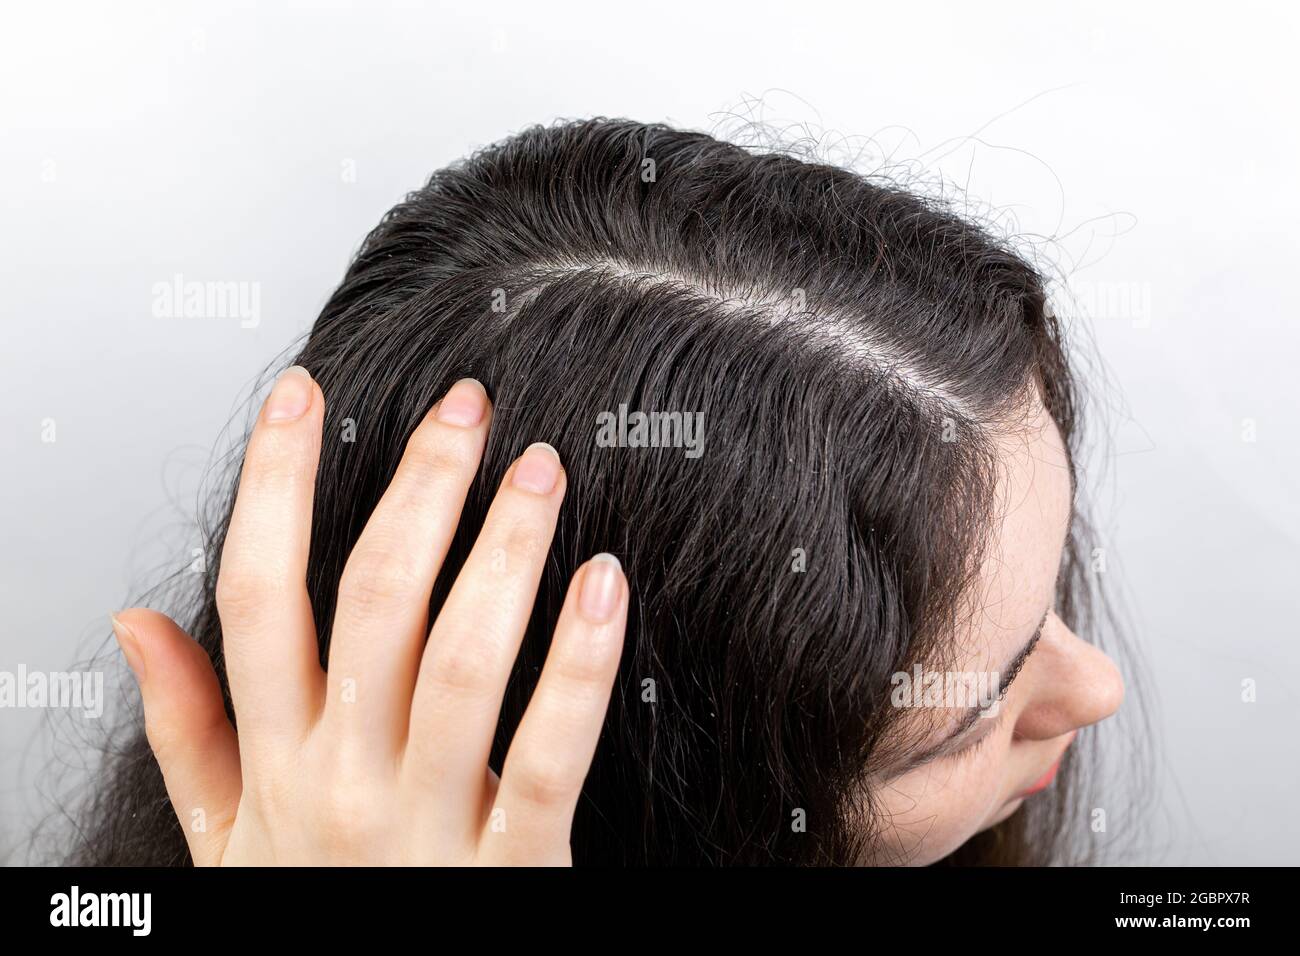 Problemas de caspa y cabello. La mujer rasca su cuero cabelludo con sus  manos, mostrando cabello oscuro con caspa. Fondo blanco. Vista superior  Fotografía de stock - Alamy